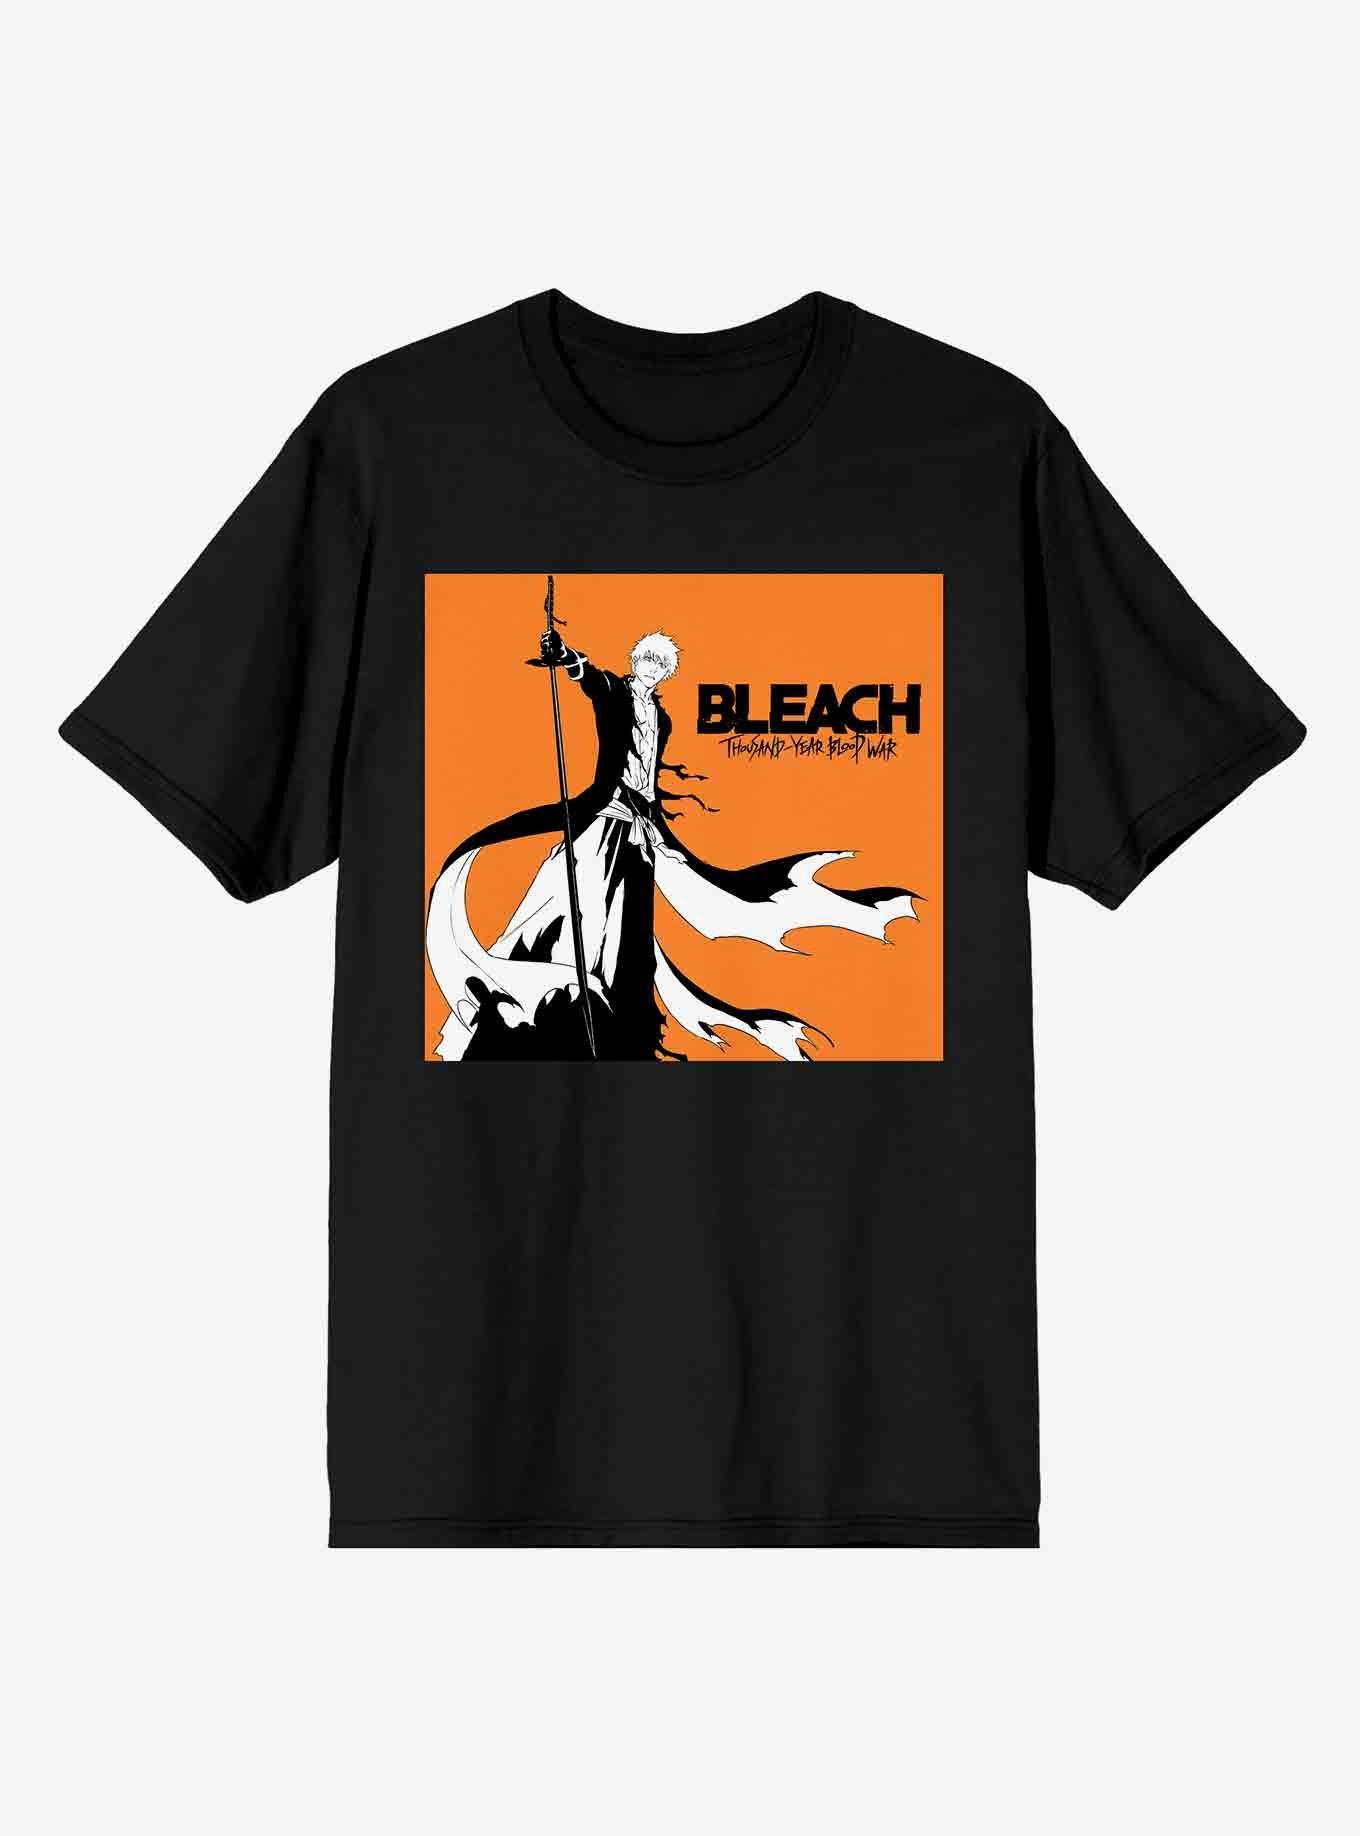 Bleach:Winter Wars  Bleach games, Bleach anime, Bleach